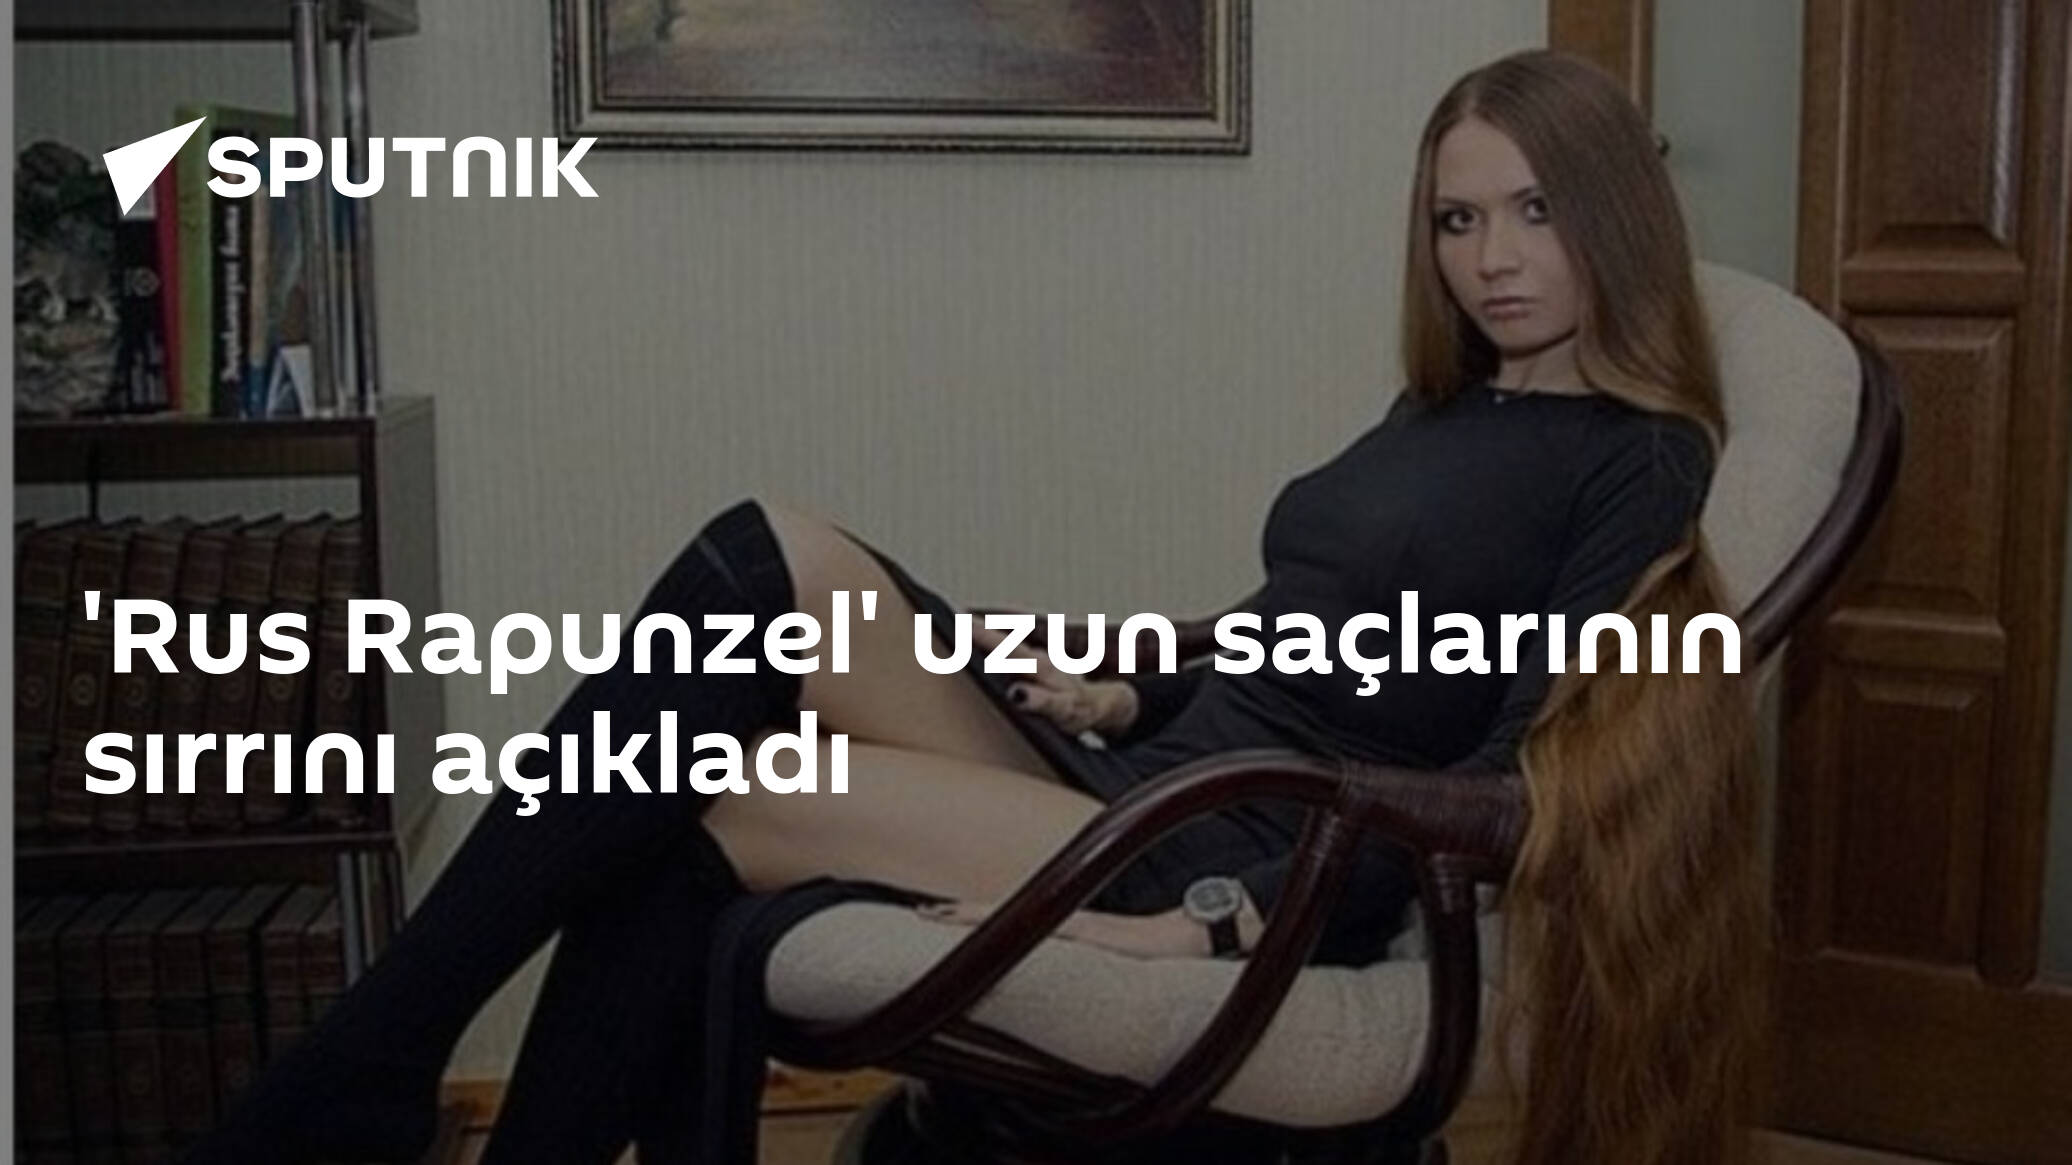 Rus Rapunzel Uzun Saçlarının Sırrını Açıkladı 19 05 2016 Sputnik Türkiye